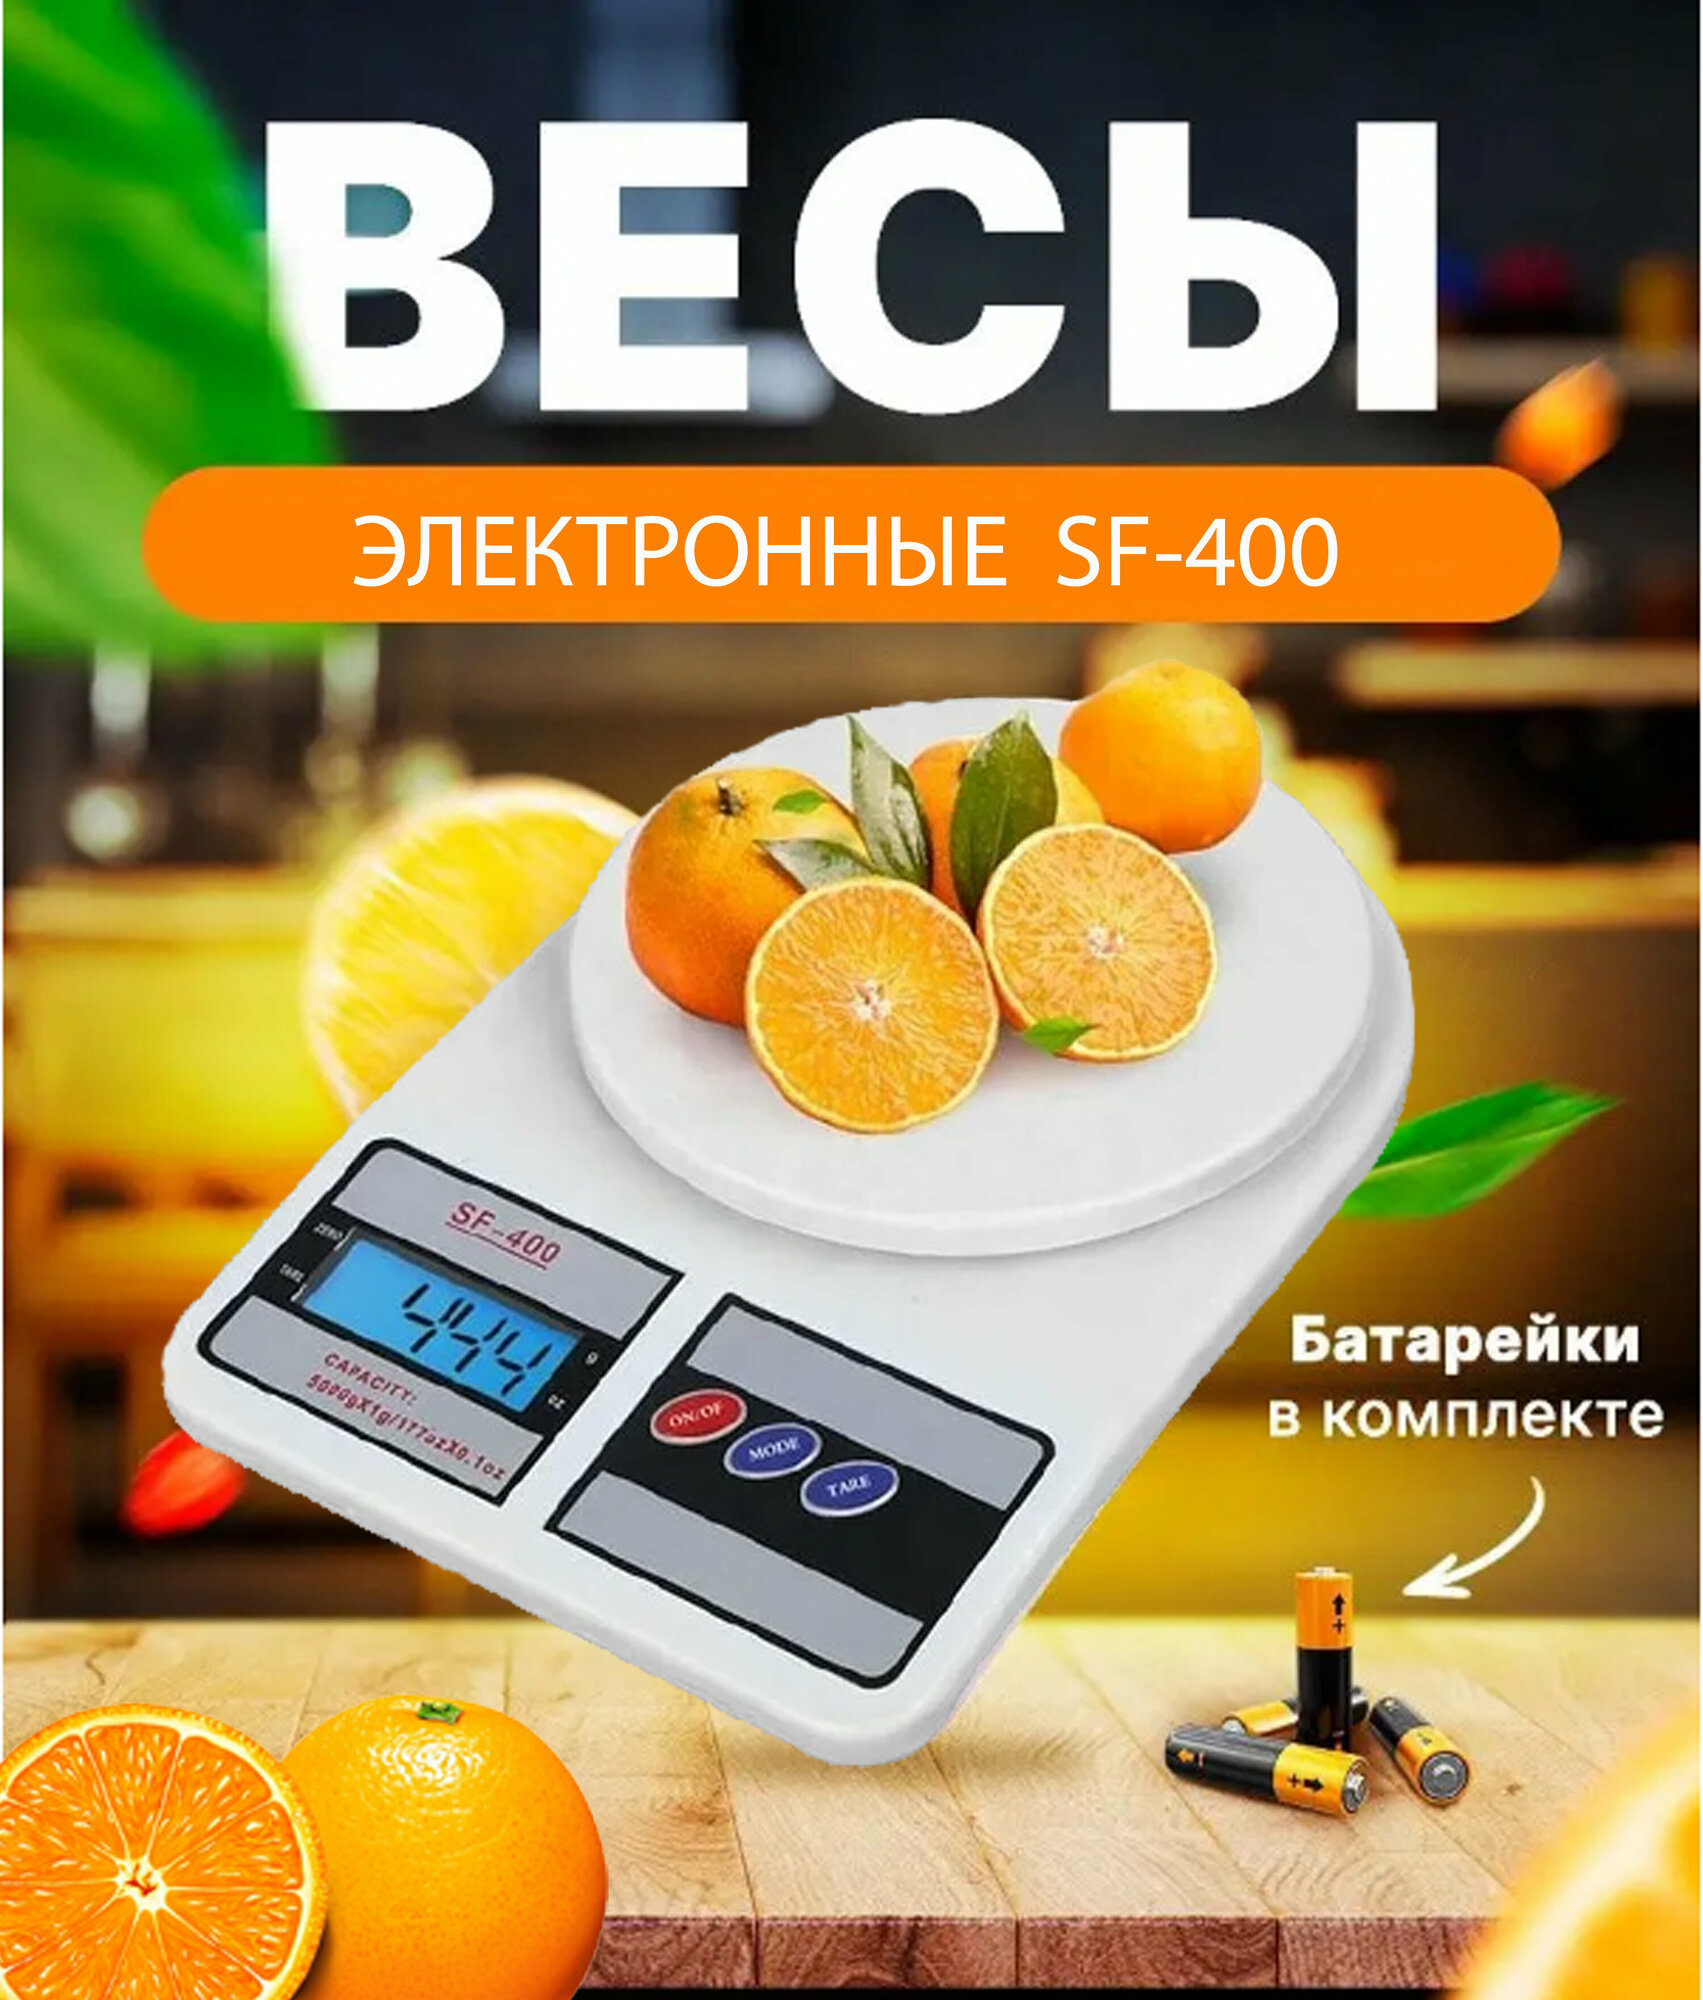 Кухонные электронные весы "SF-400", бренд